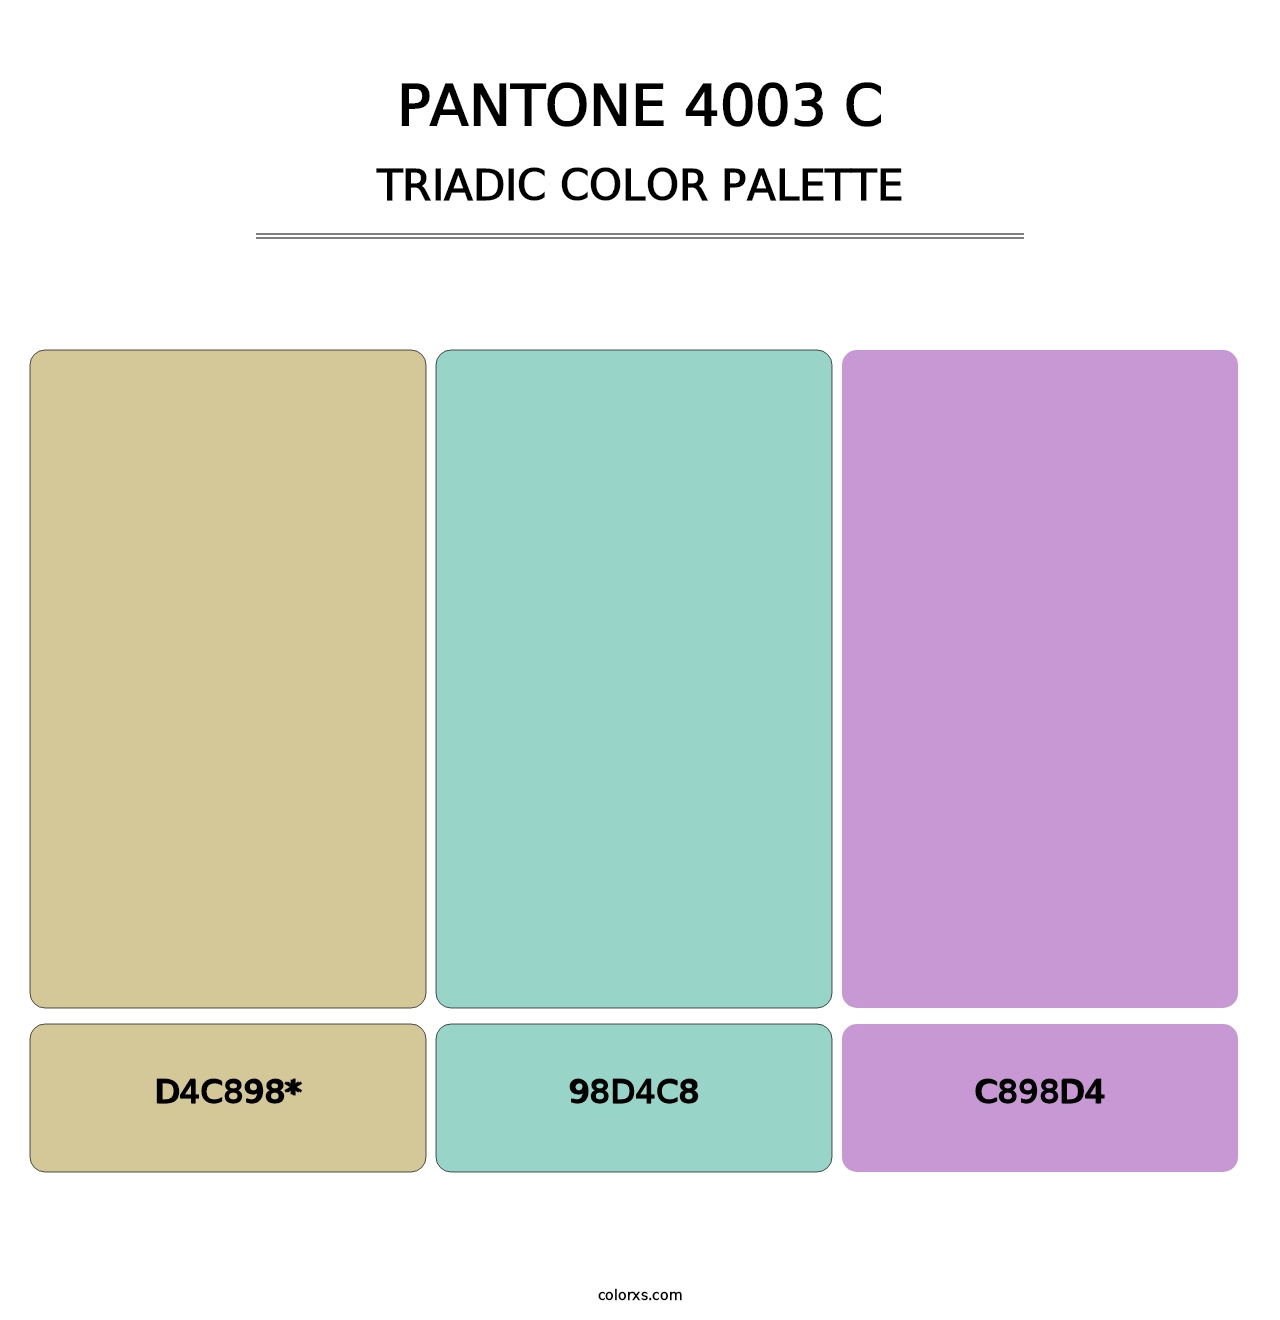 PANTONE 4003 C - Triadic Color Palette